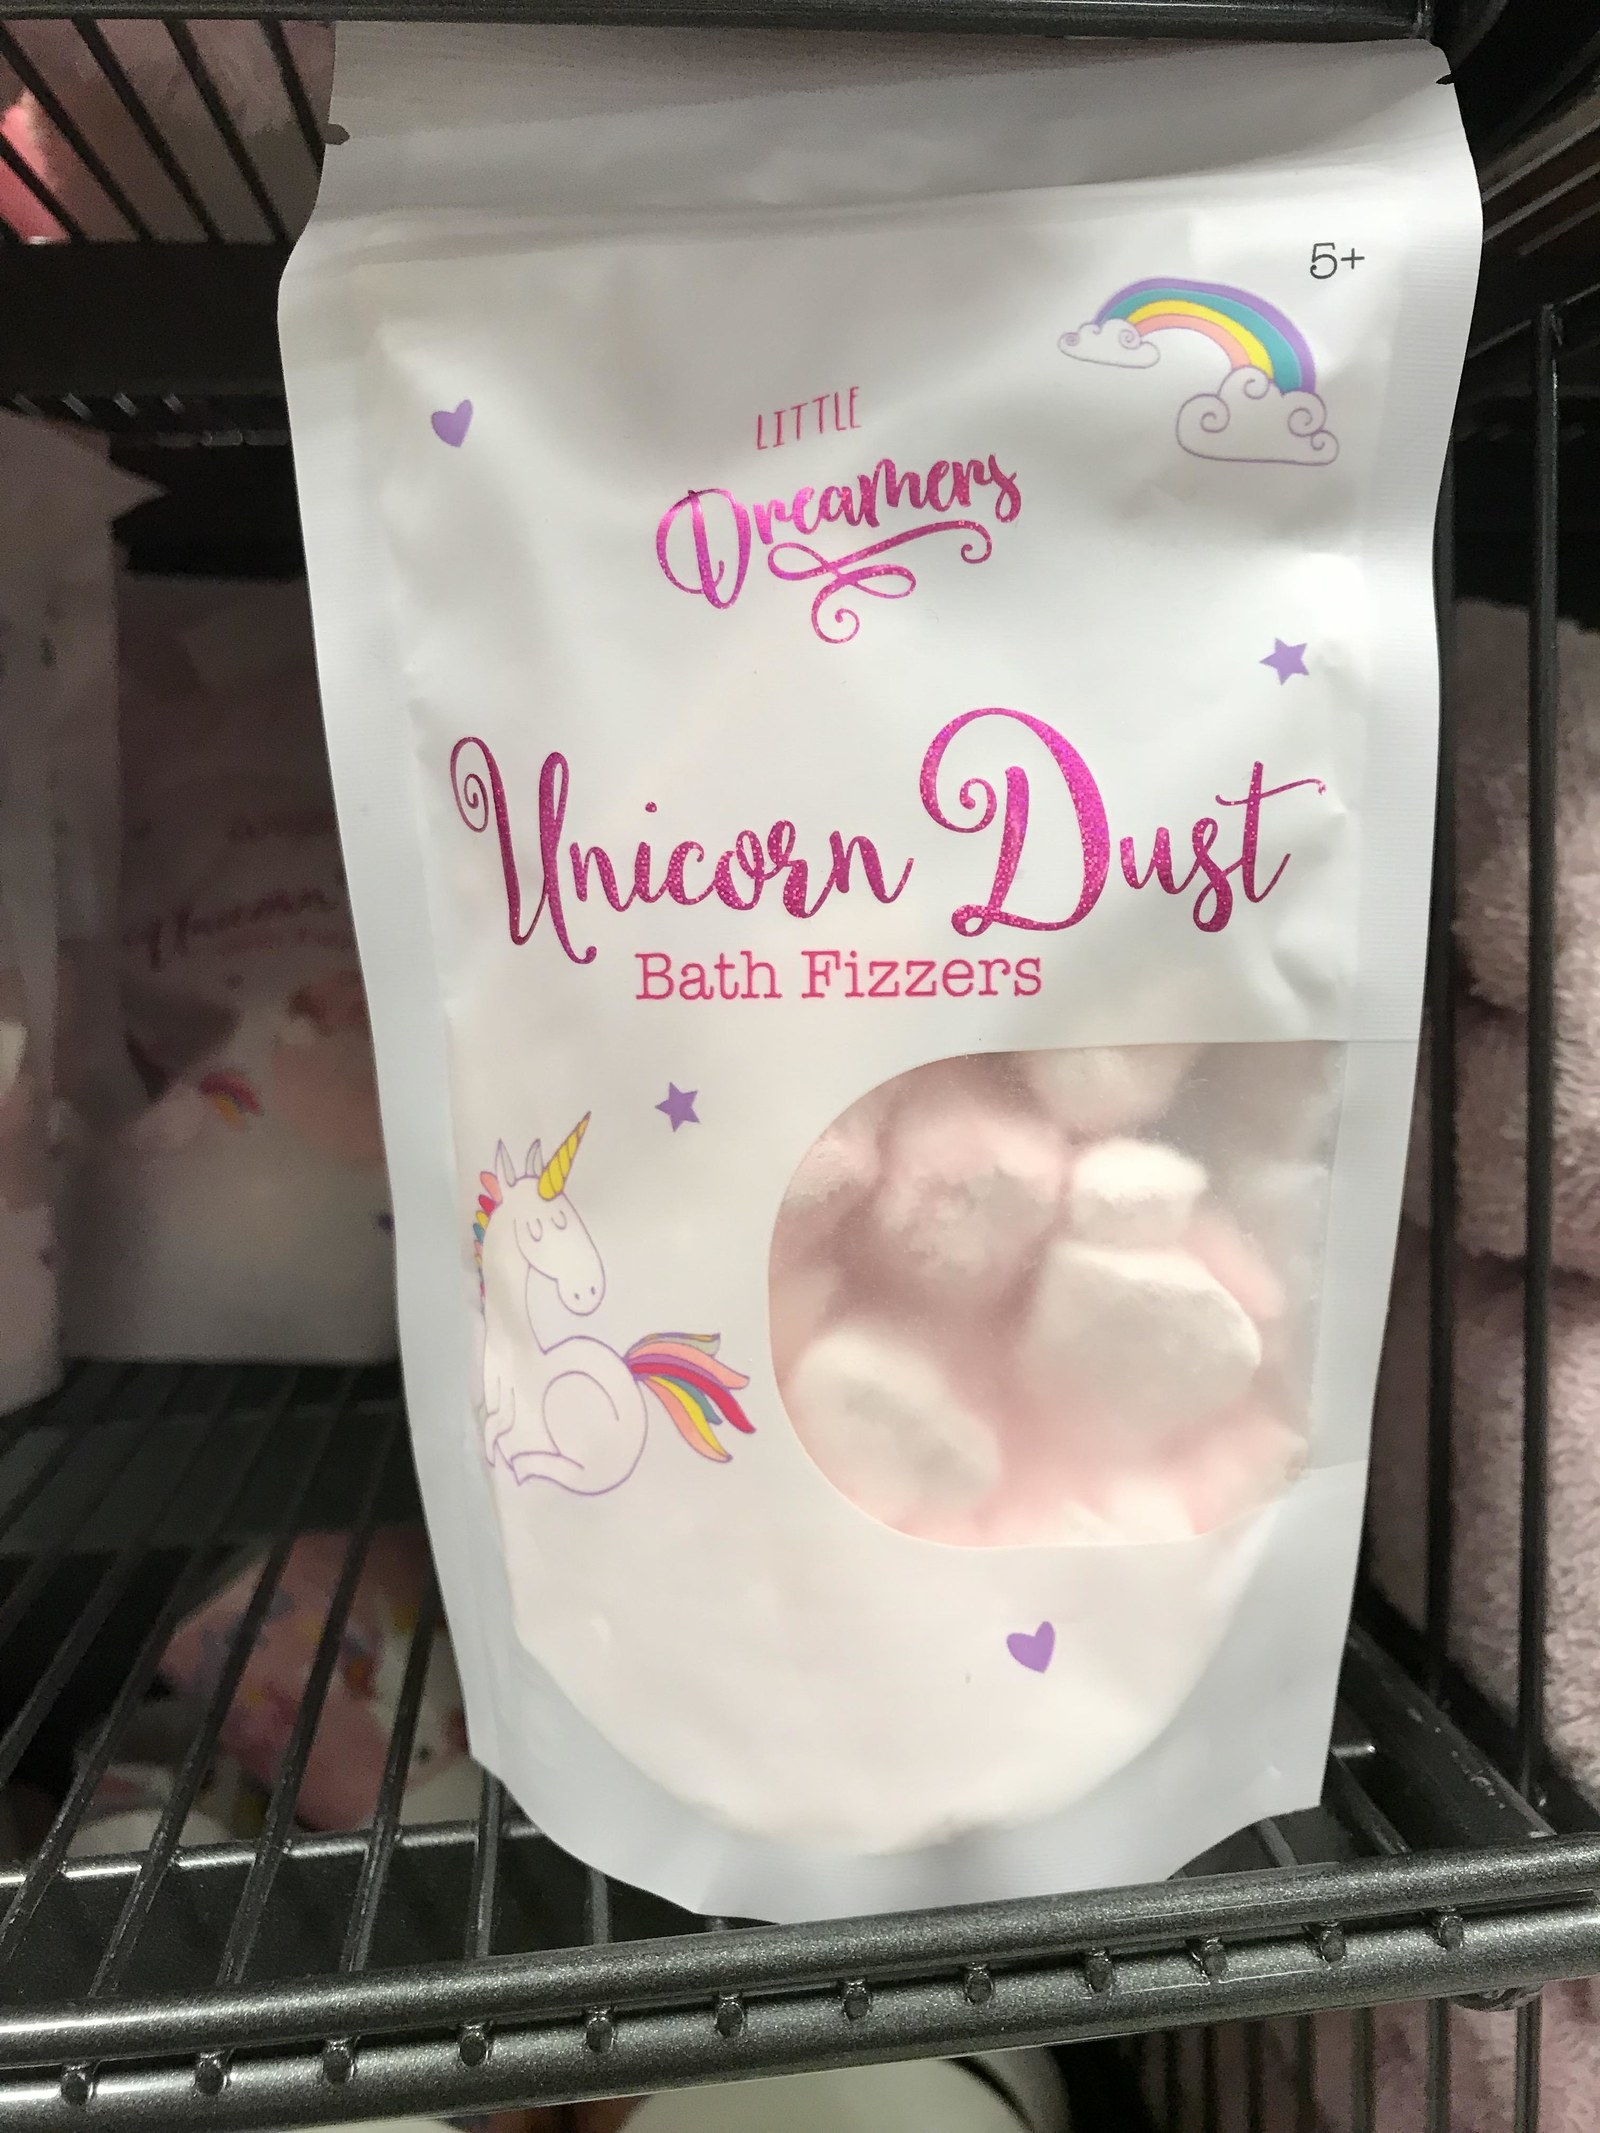 a package of Unicorn Dust bath fizzers